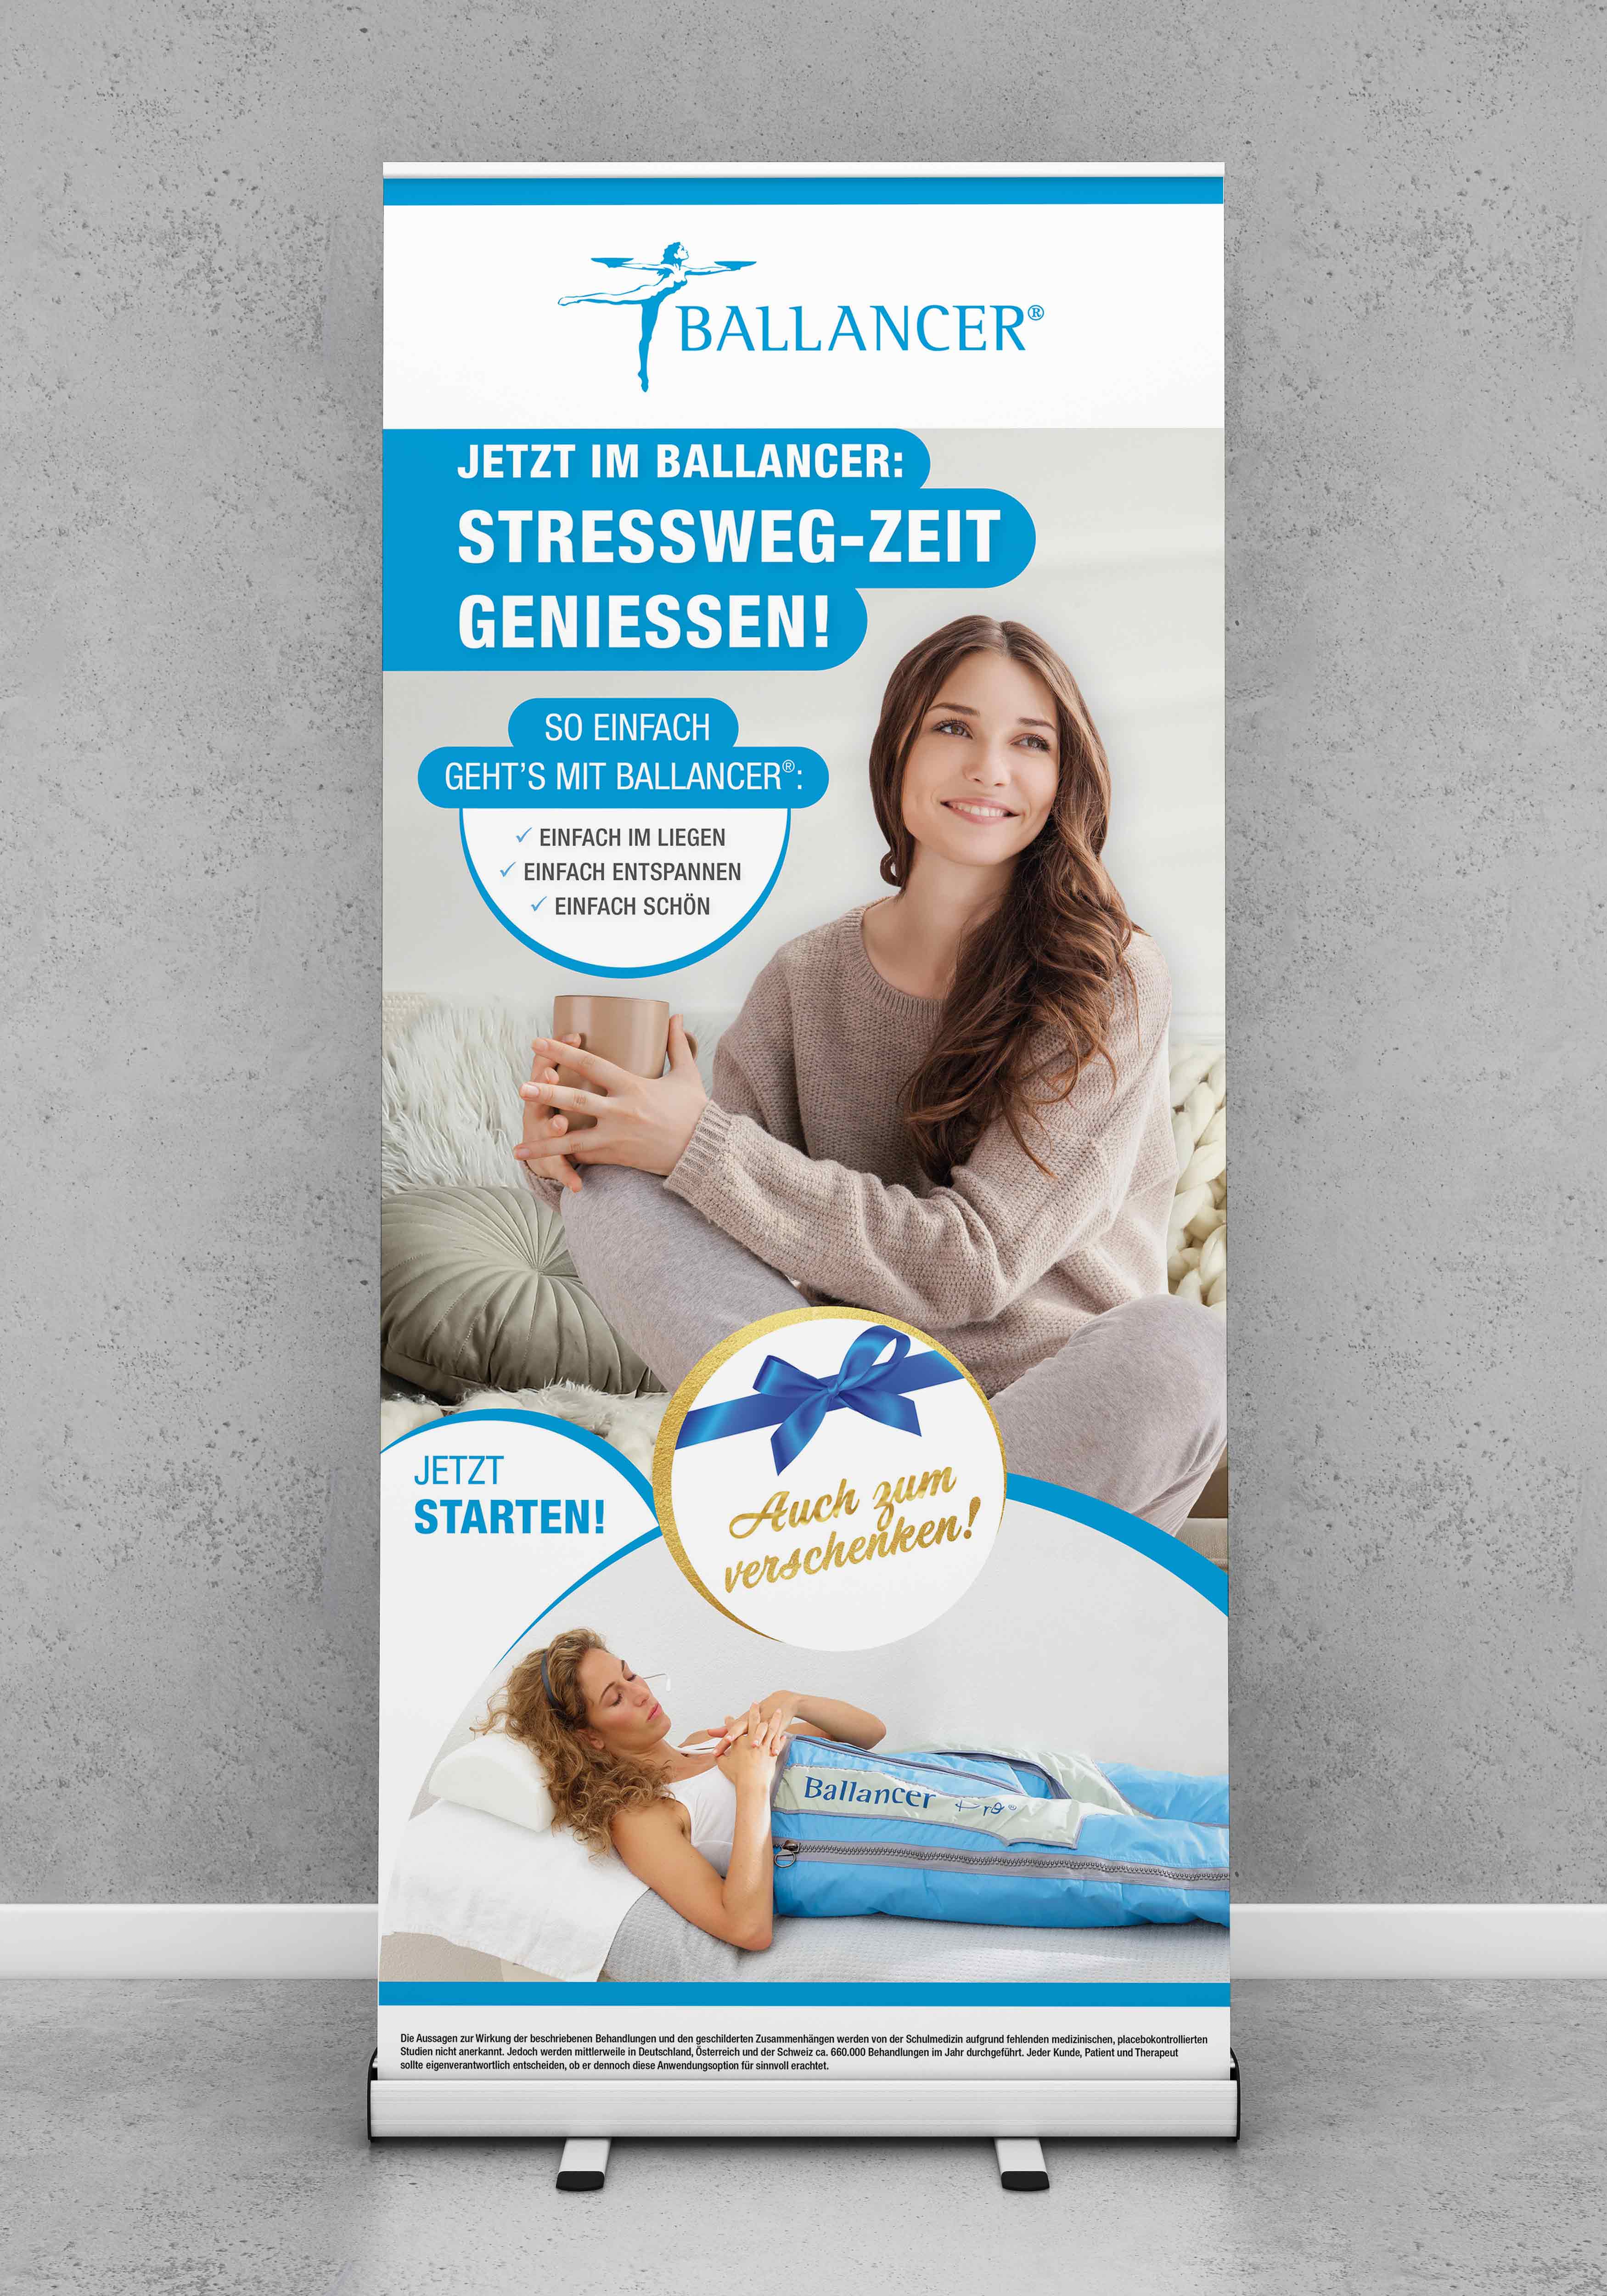 Roll-Up Kampagne "Stressweg-Zeit genießen"